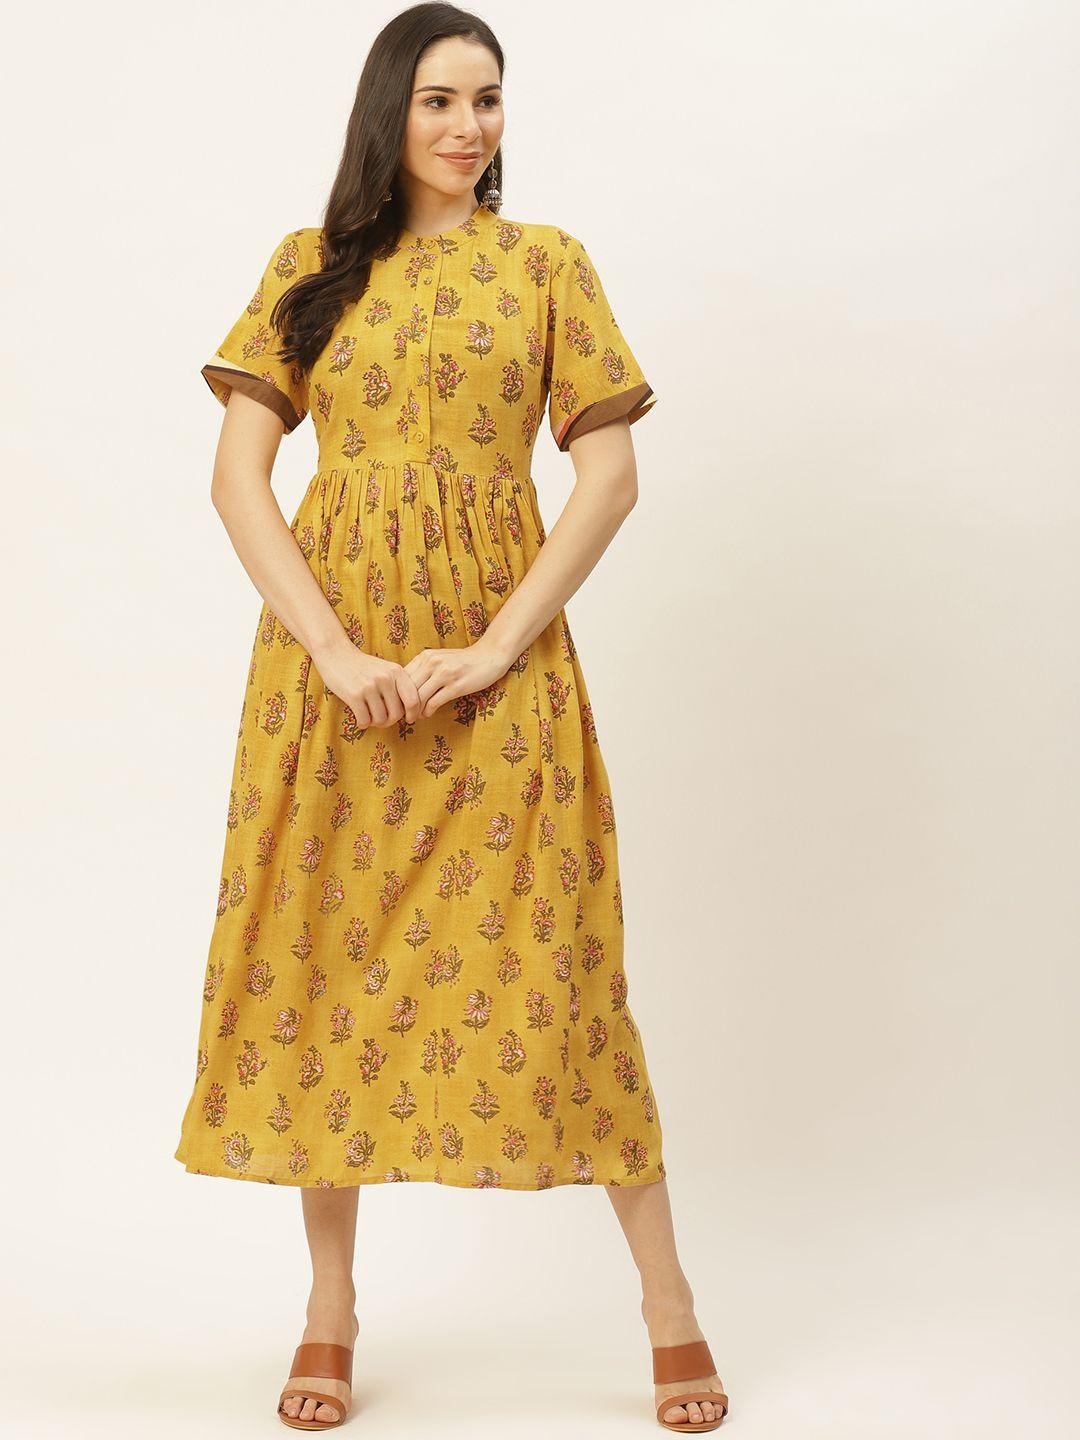 aarke ritu kumar mustard yellow & olive green floral printed a-line midi dress